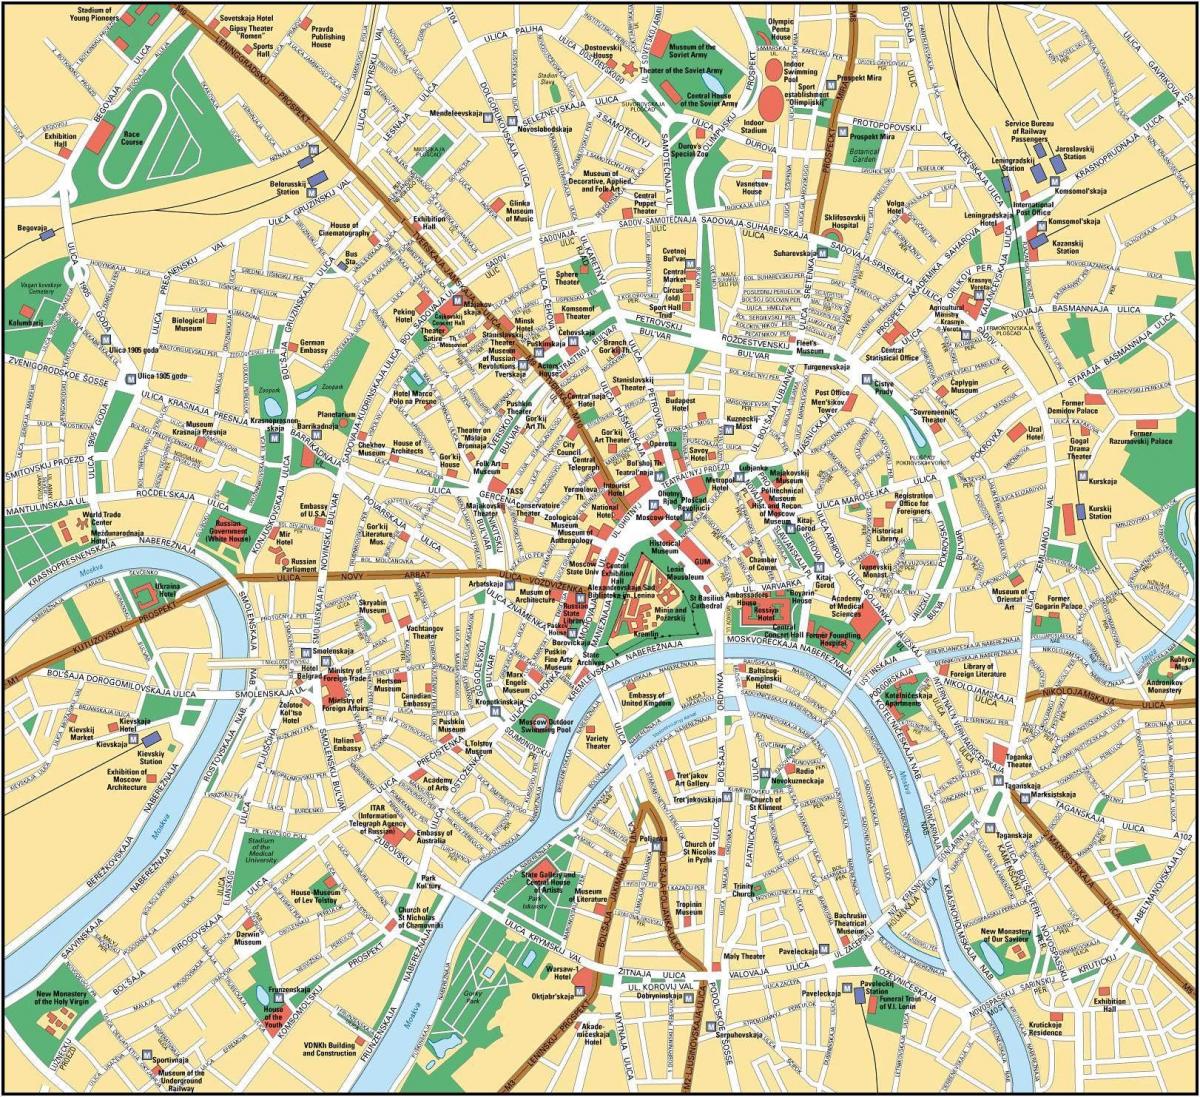 bản đồ của Moscow trong tiếng anh